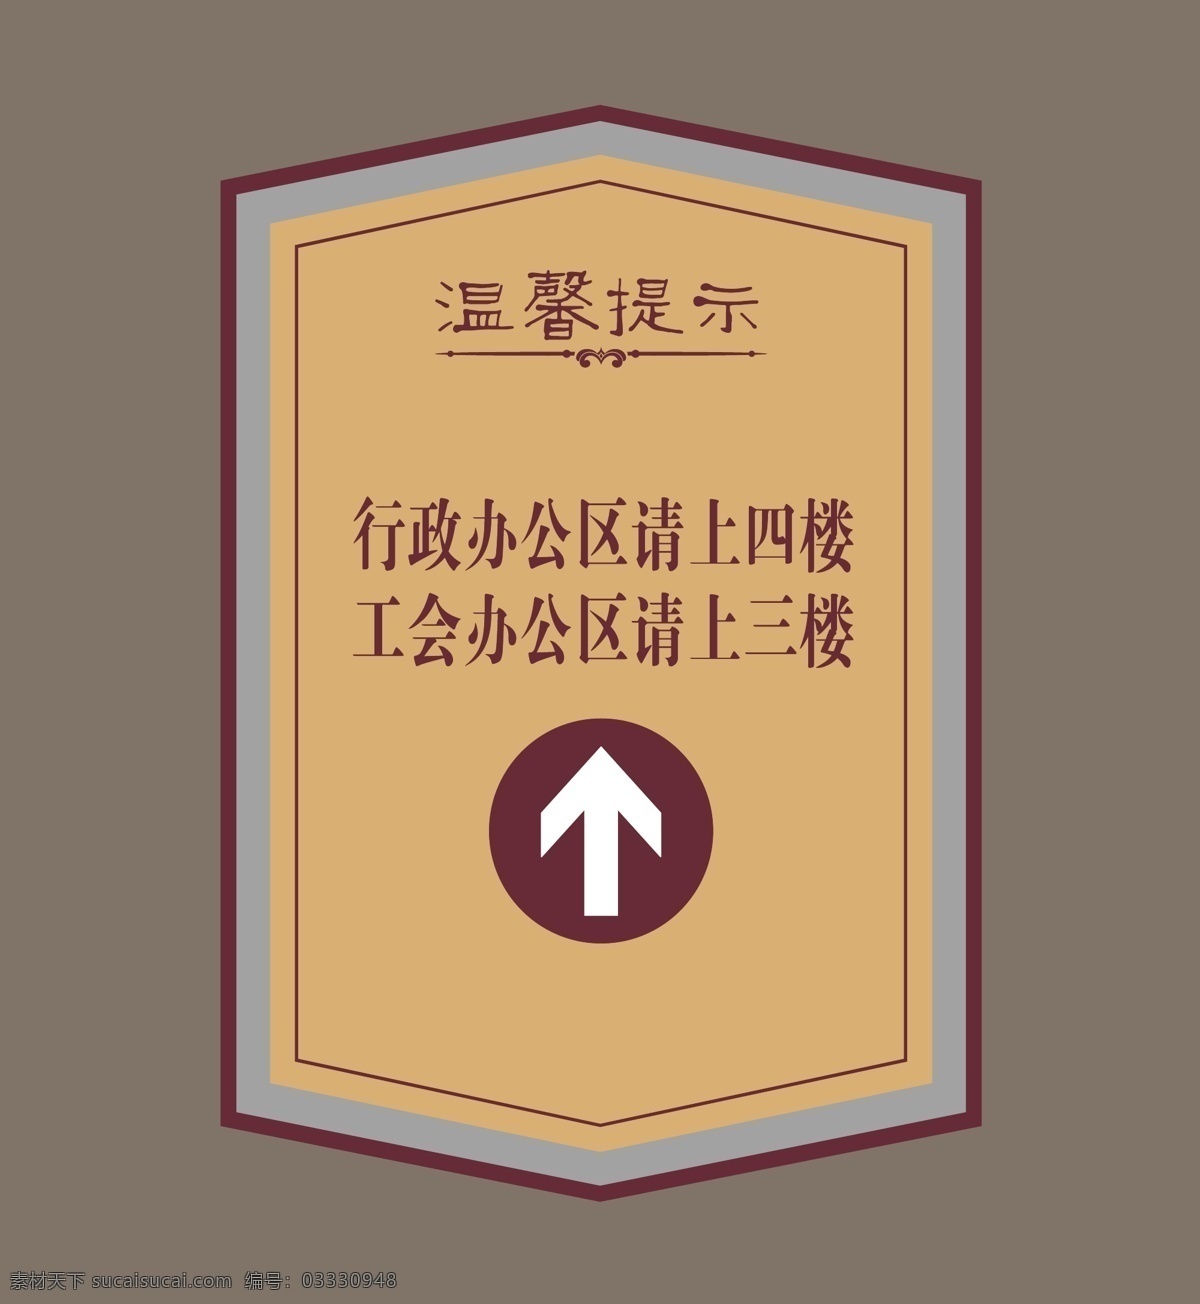 电梯指示牌 电梯警示牌 公示牌 警示牌 指示牌 标志图标 公共标识标志